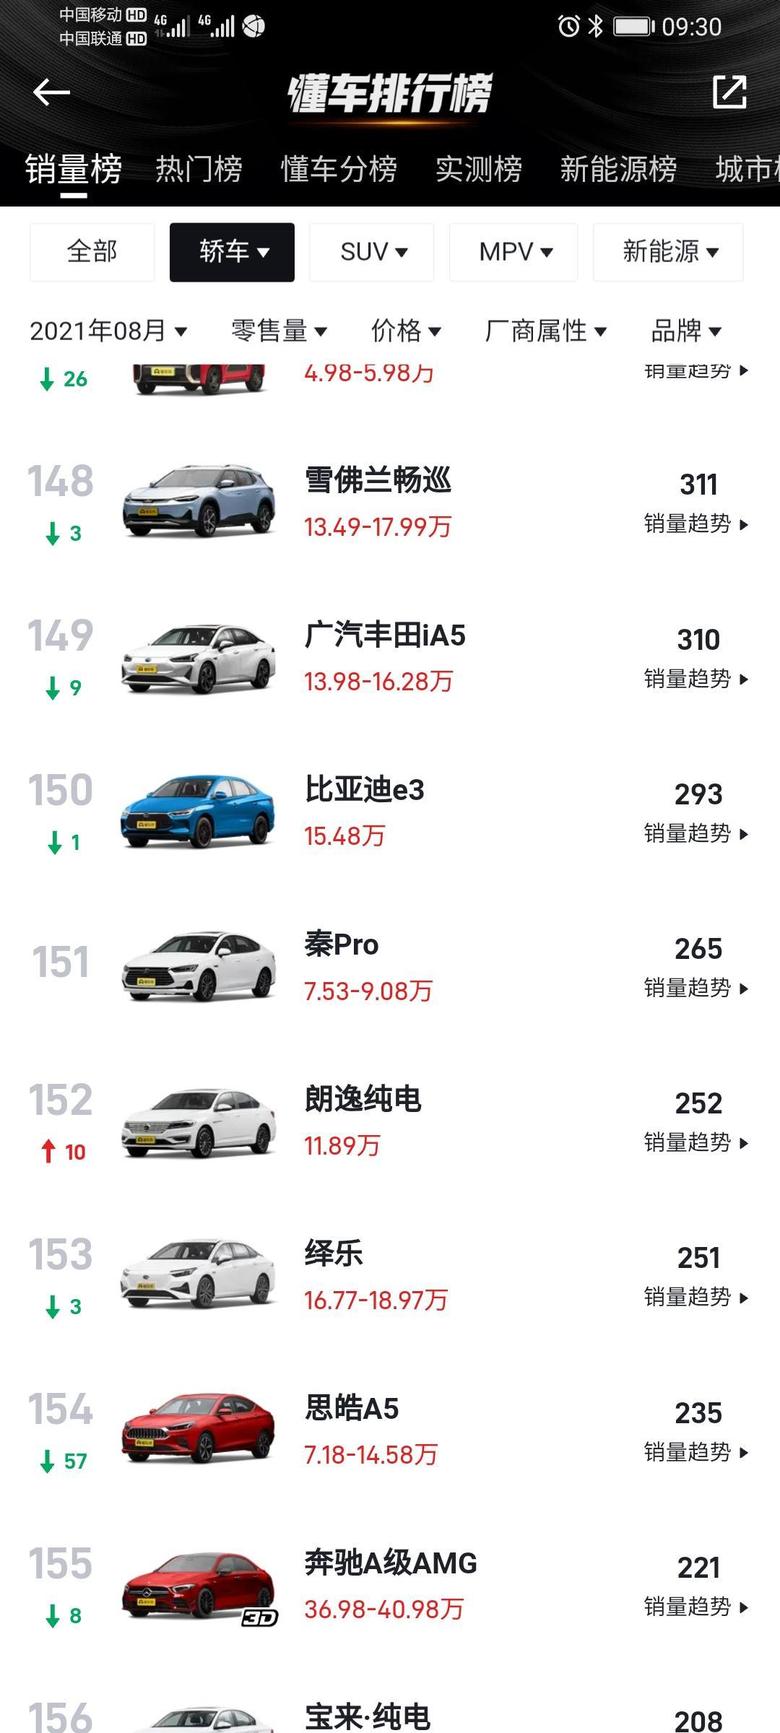 这款秦Pro车八月份还是有销量的，两百六十五台